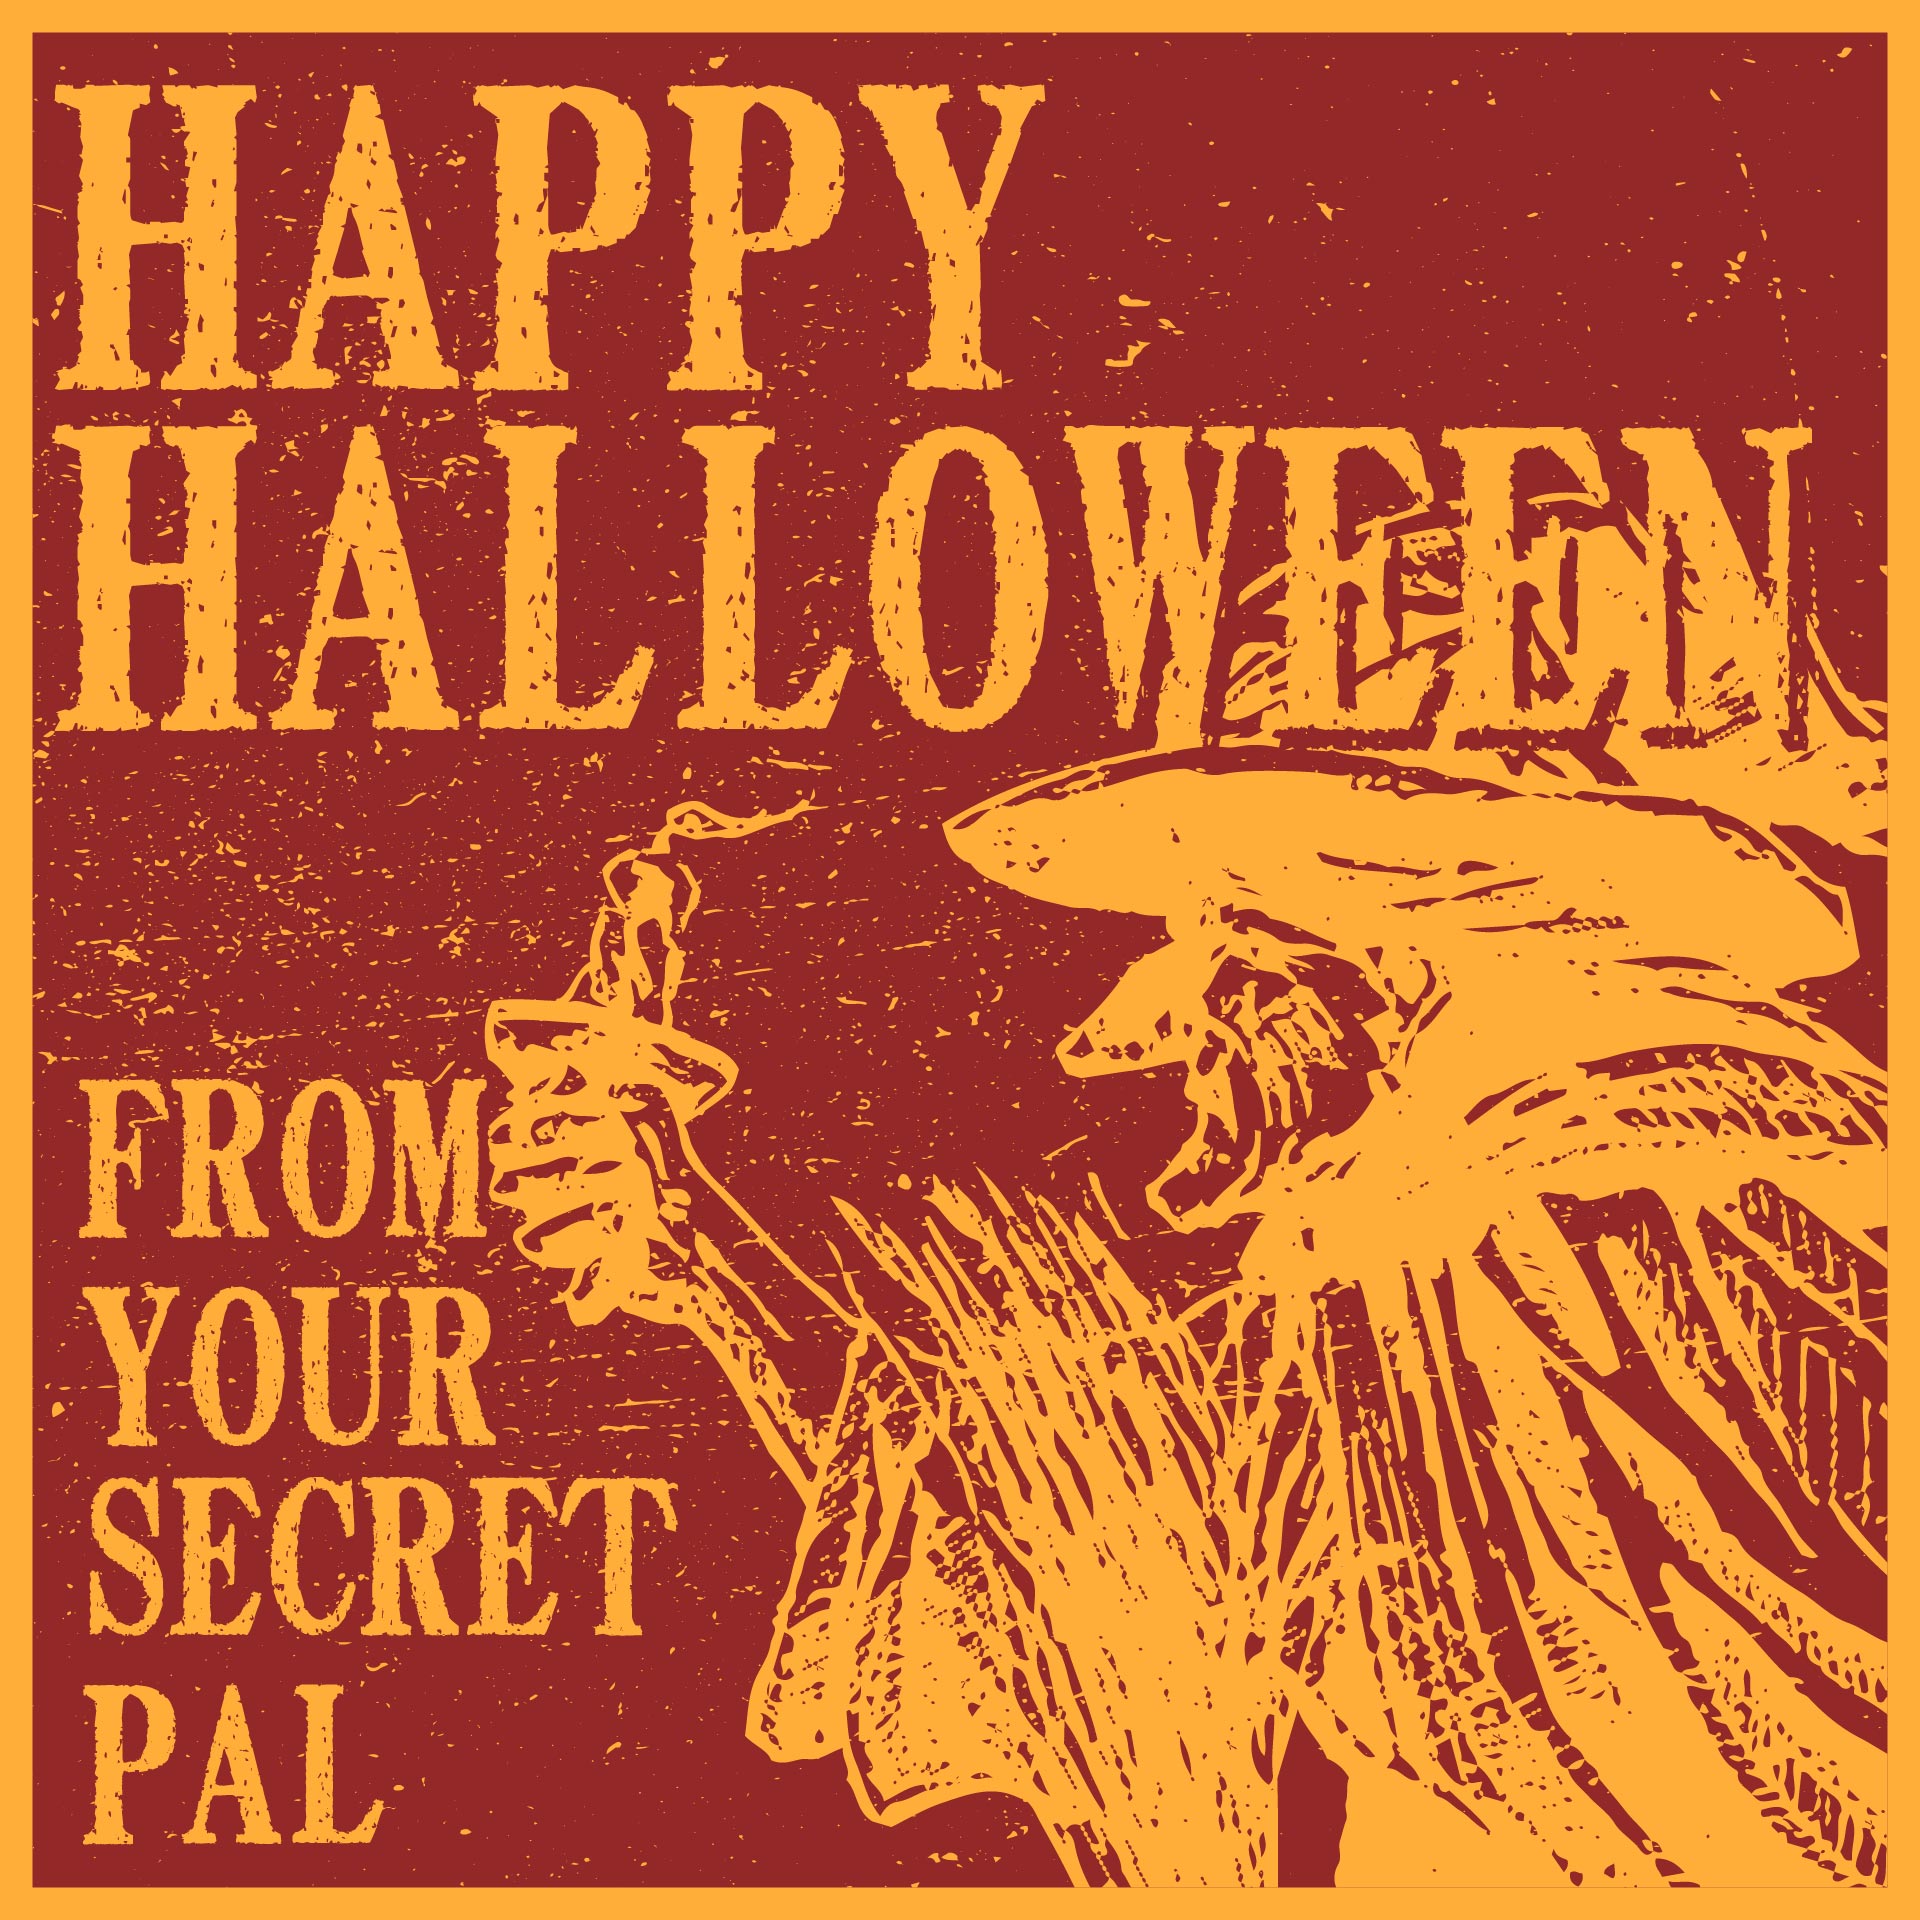 Printable Vintage Halloween Greeting Cards